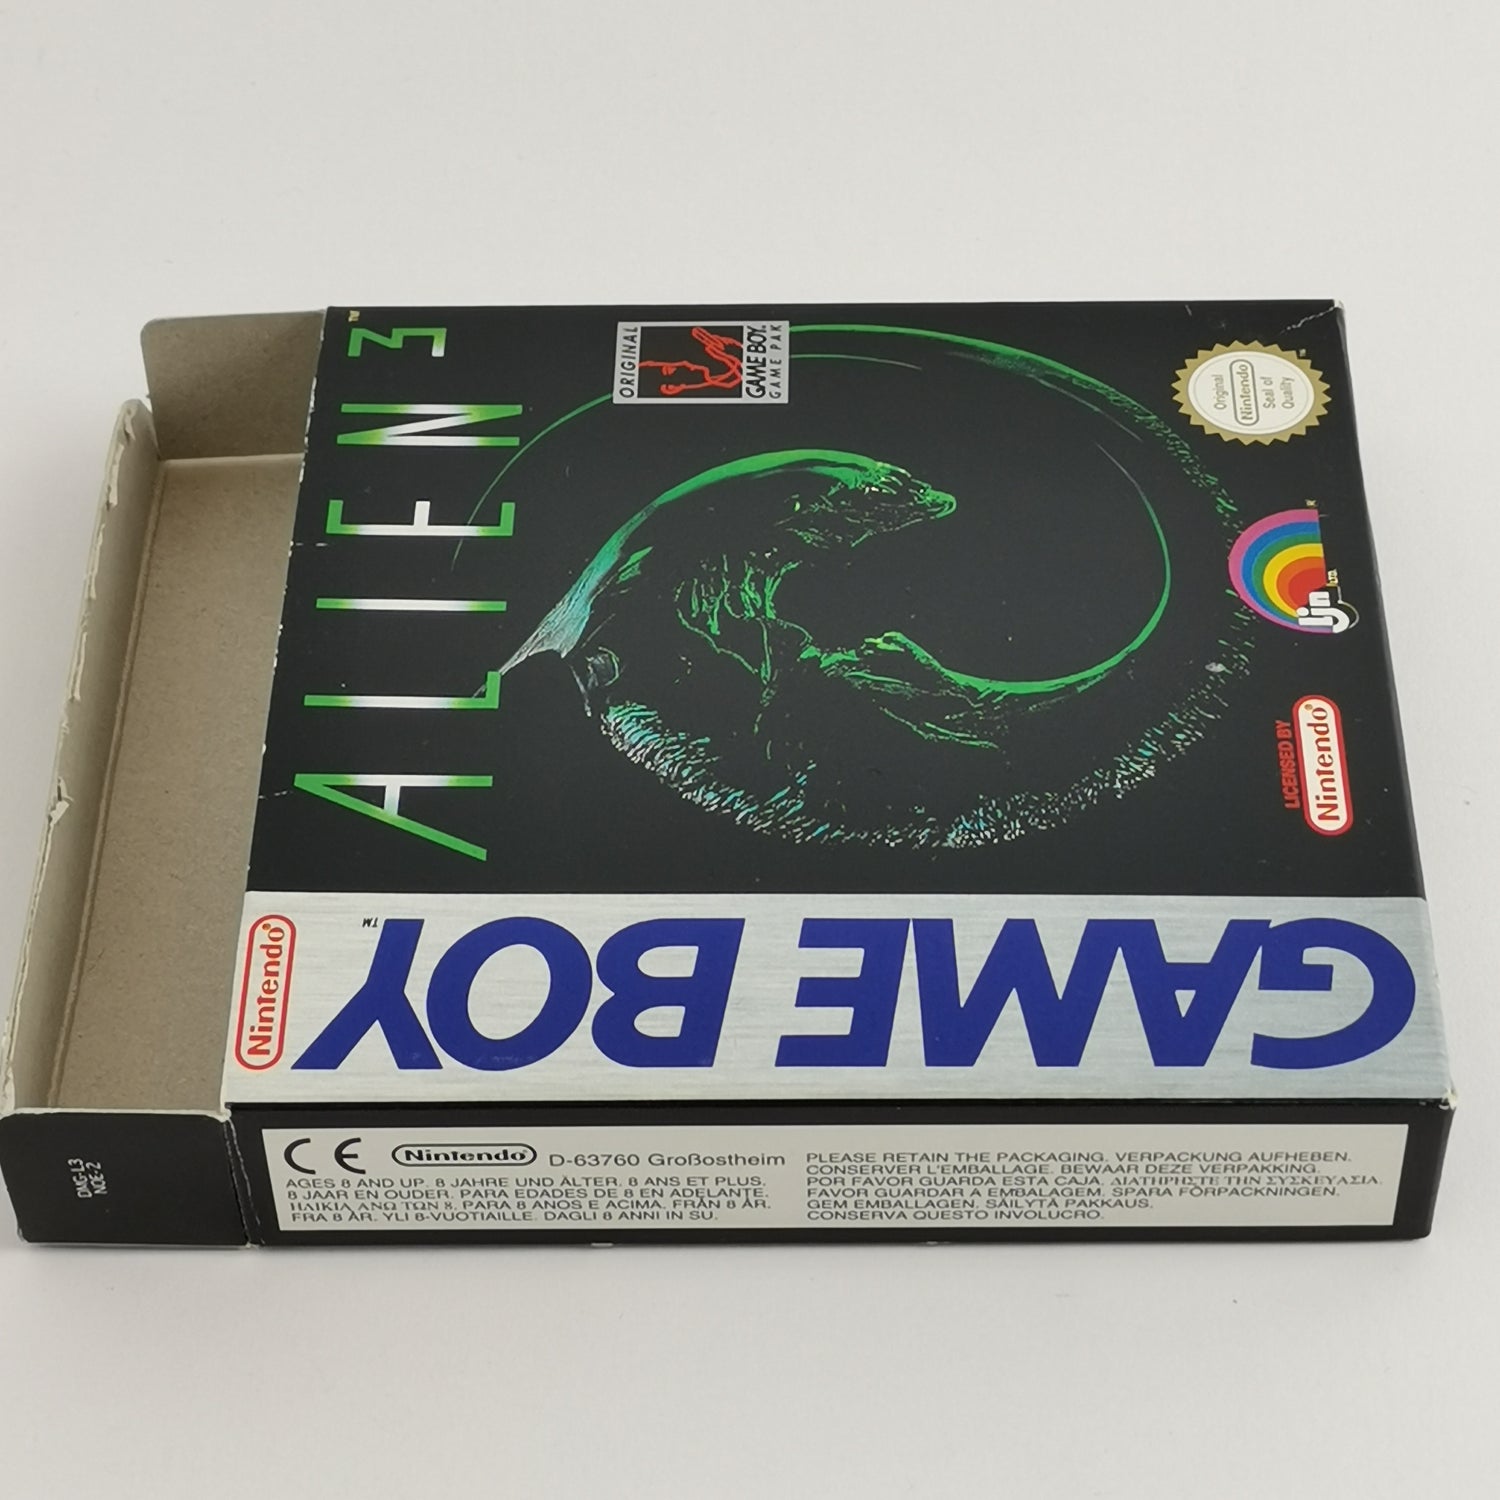 Nintendo Game Boy Classic Spiel : Alien 3 von acclaim - OVP & Anleitung | PAL